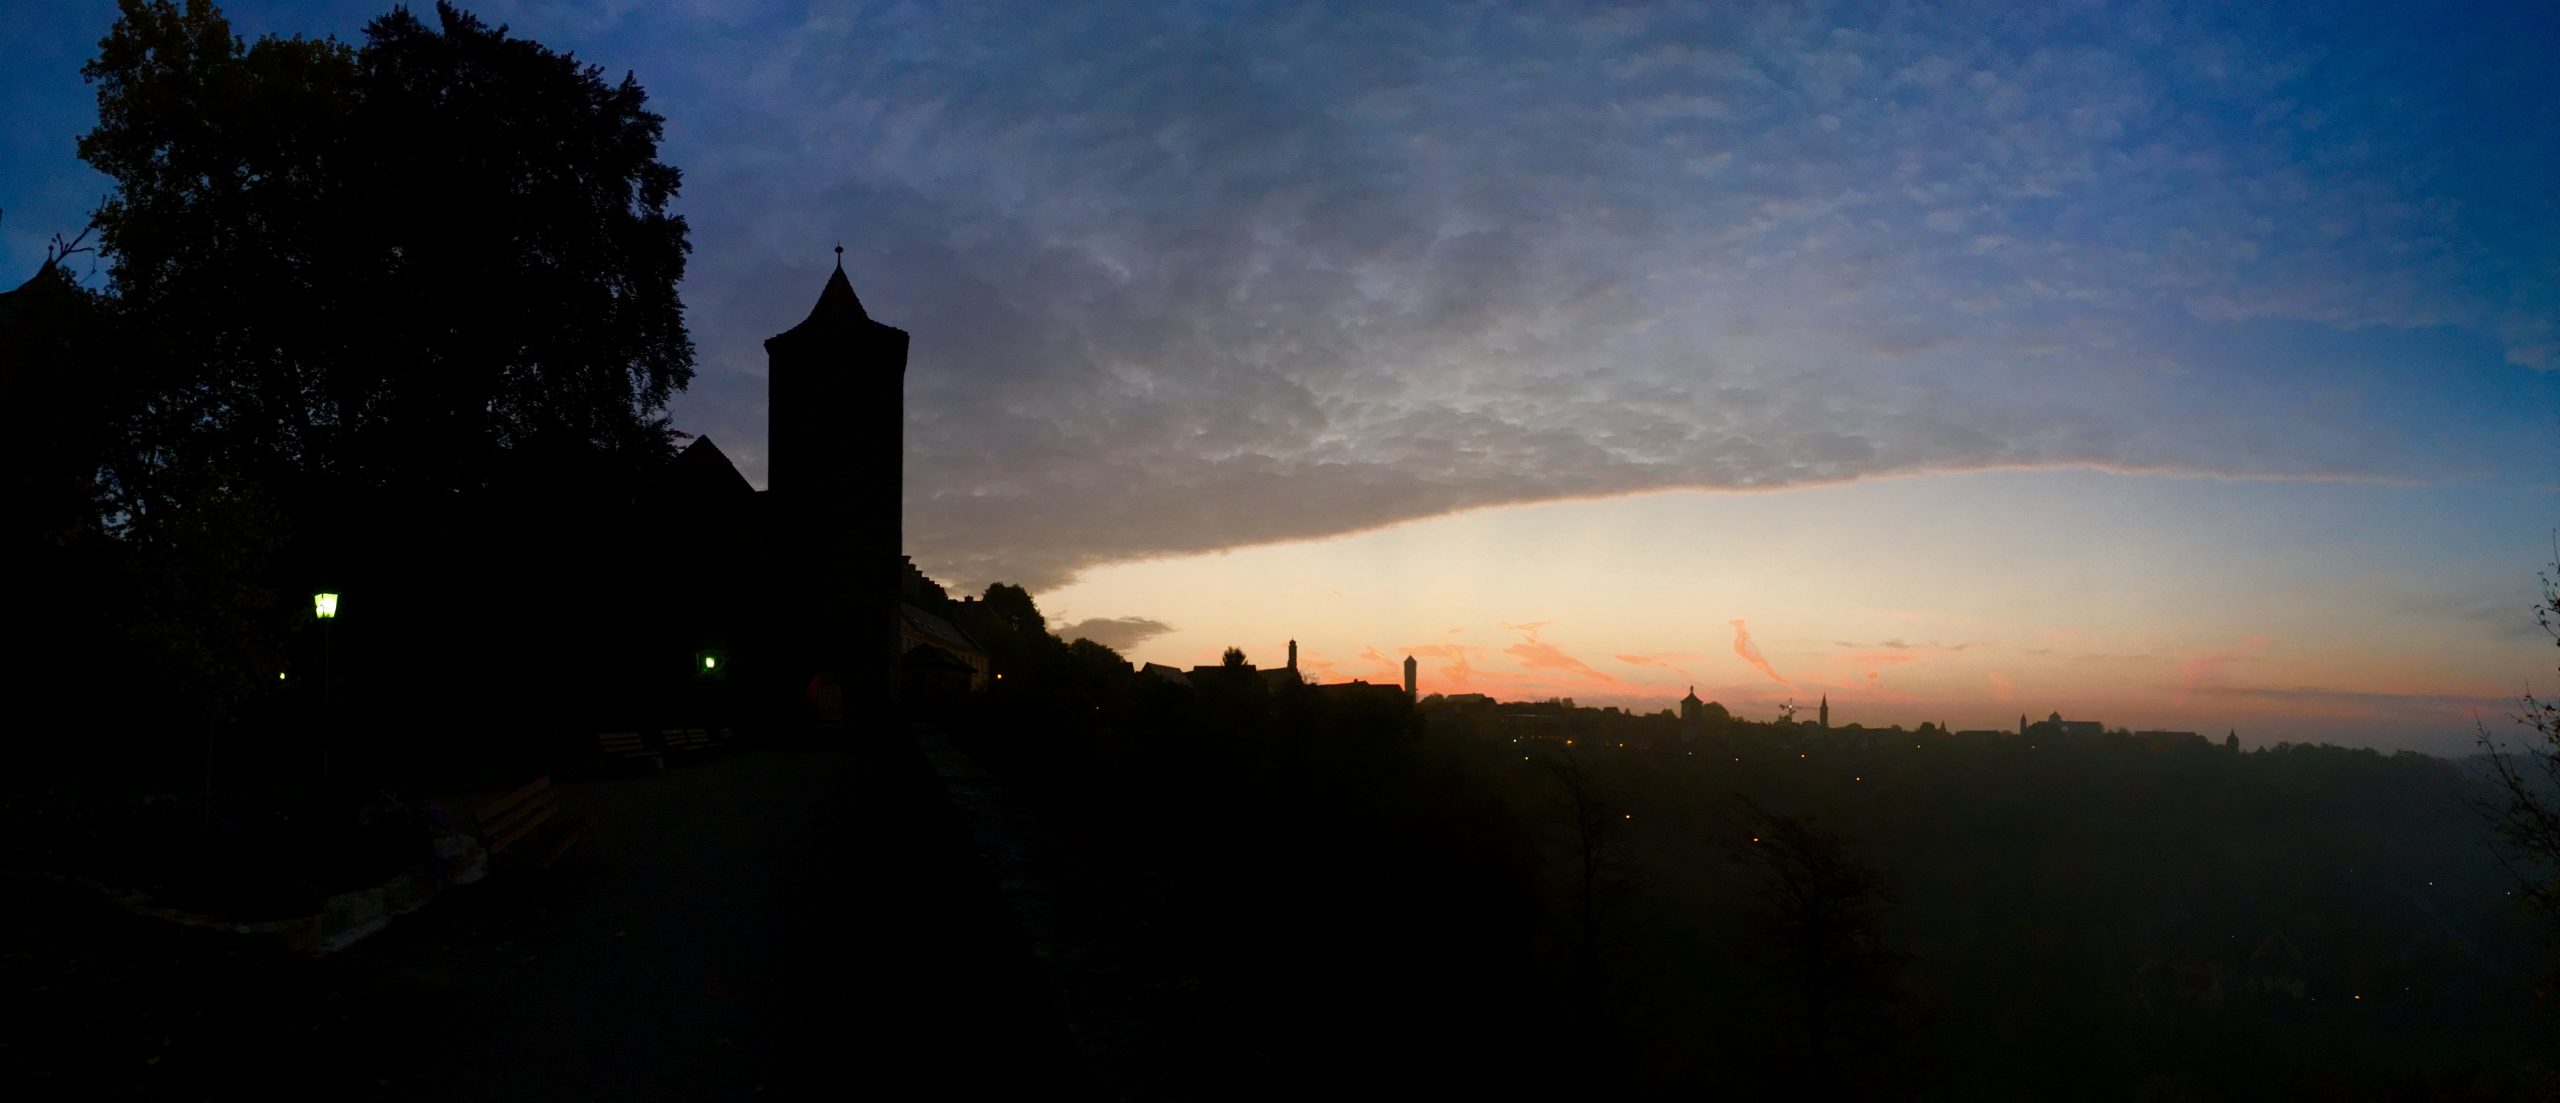 Sunrise over Rothenburg ob der Tauber